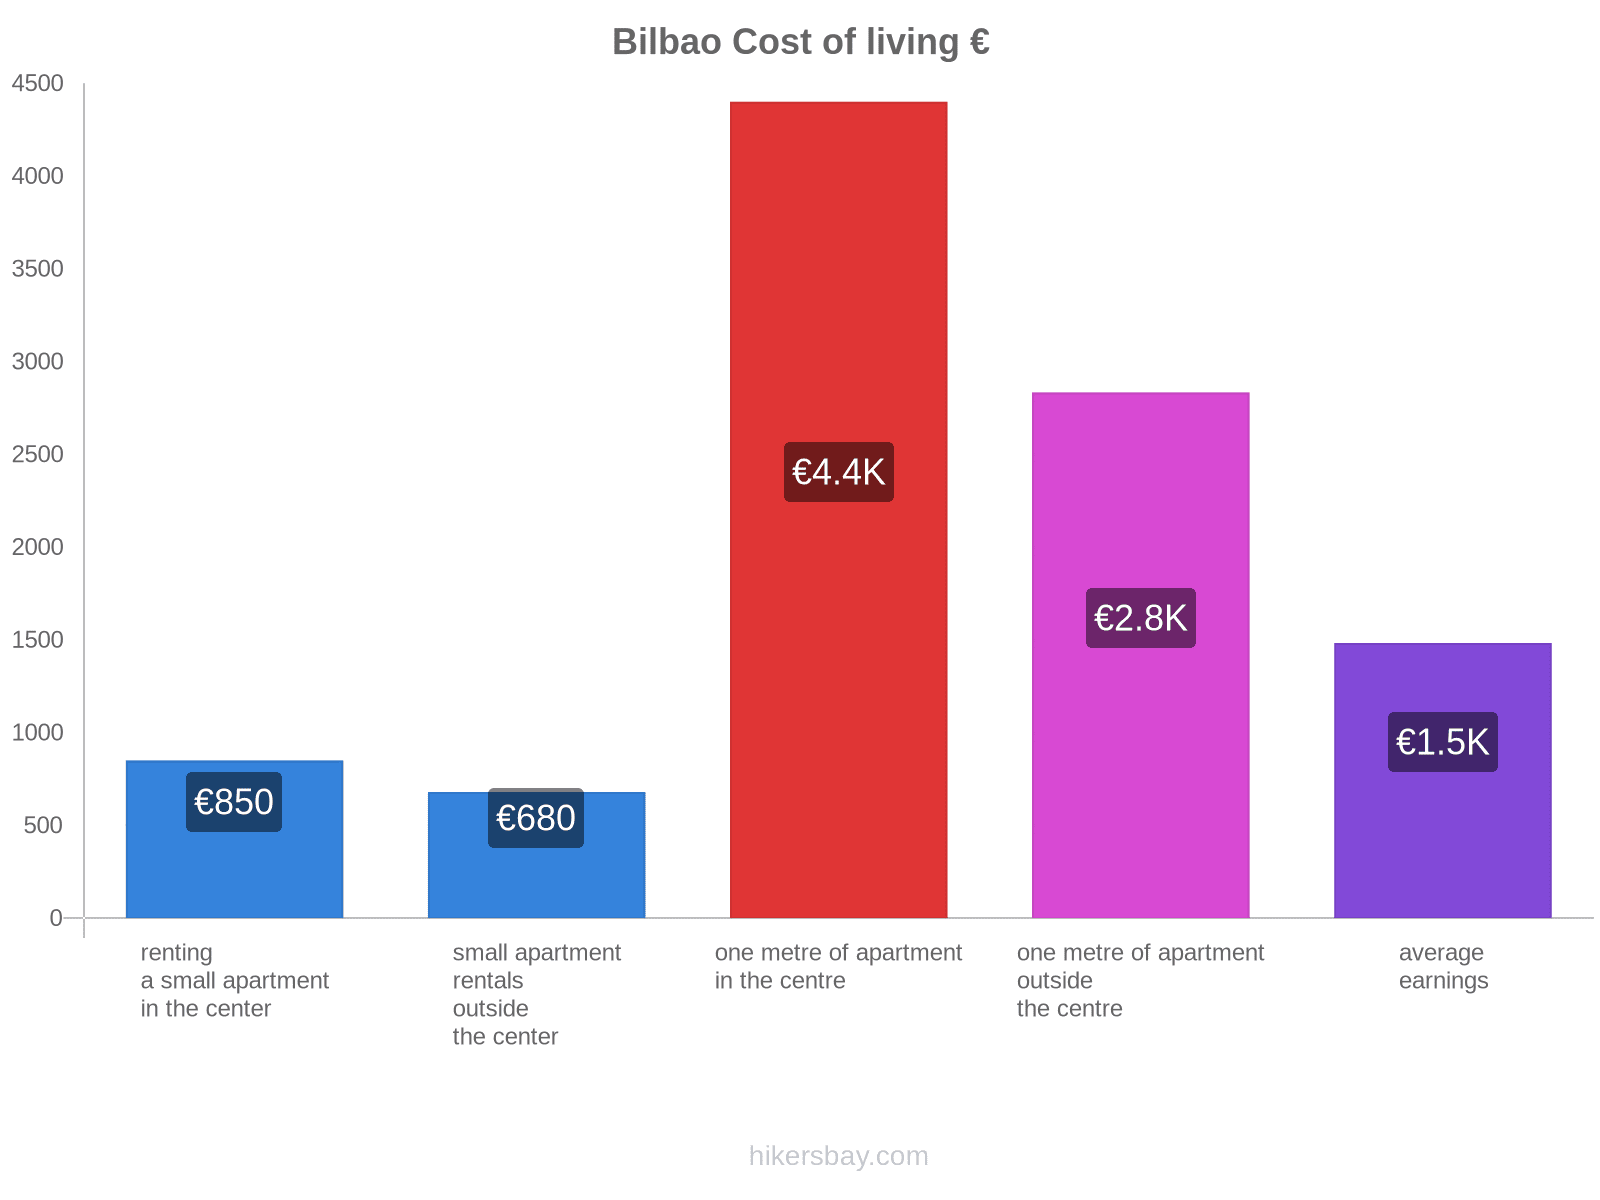 Bilbao cost of living hikersbay.com